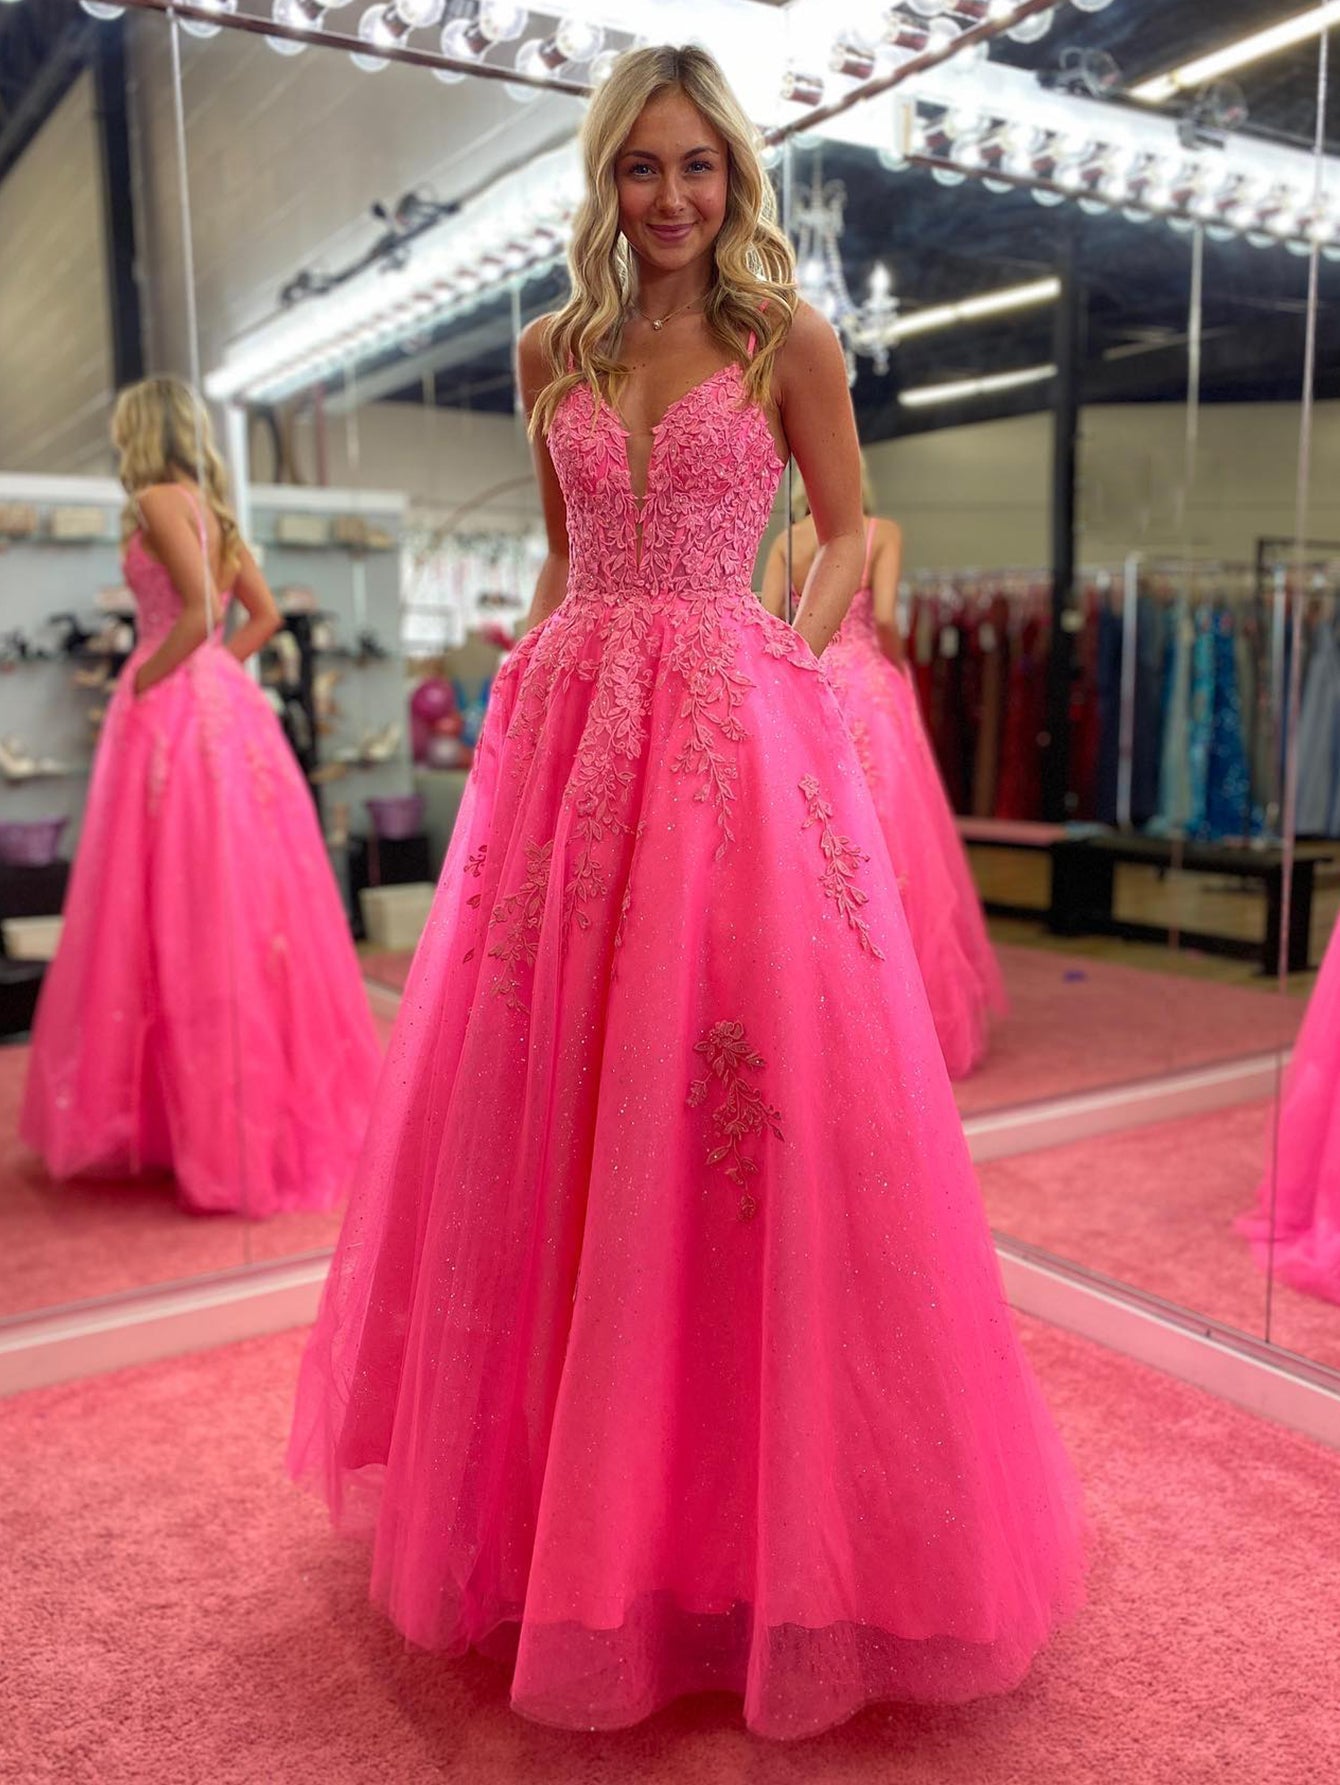 Angelina |V Neck Pink A Line Lace Long Prom Dress